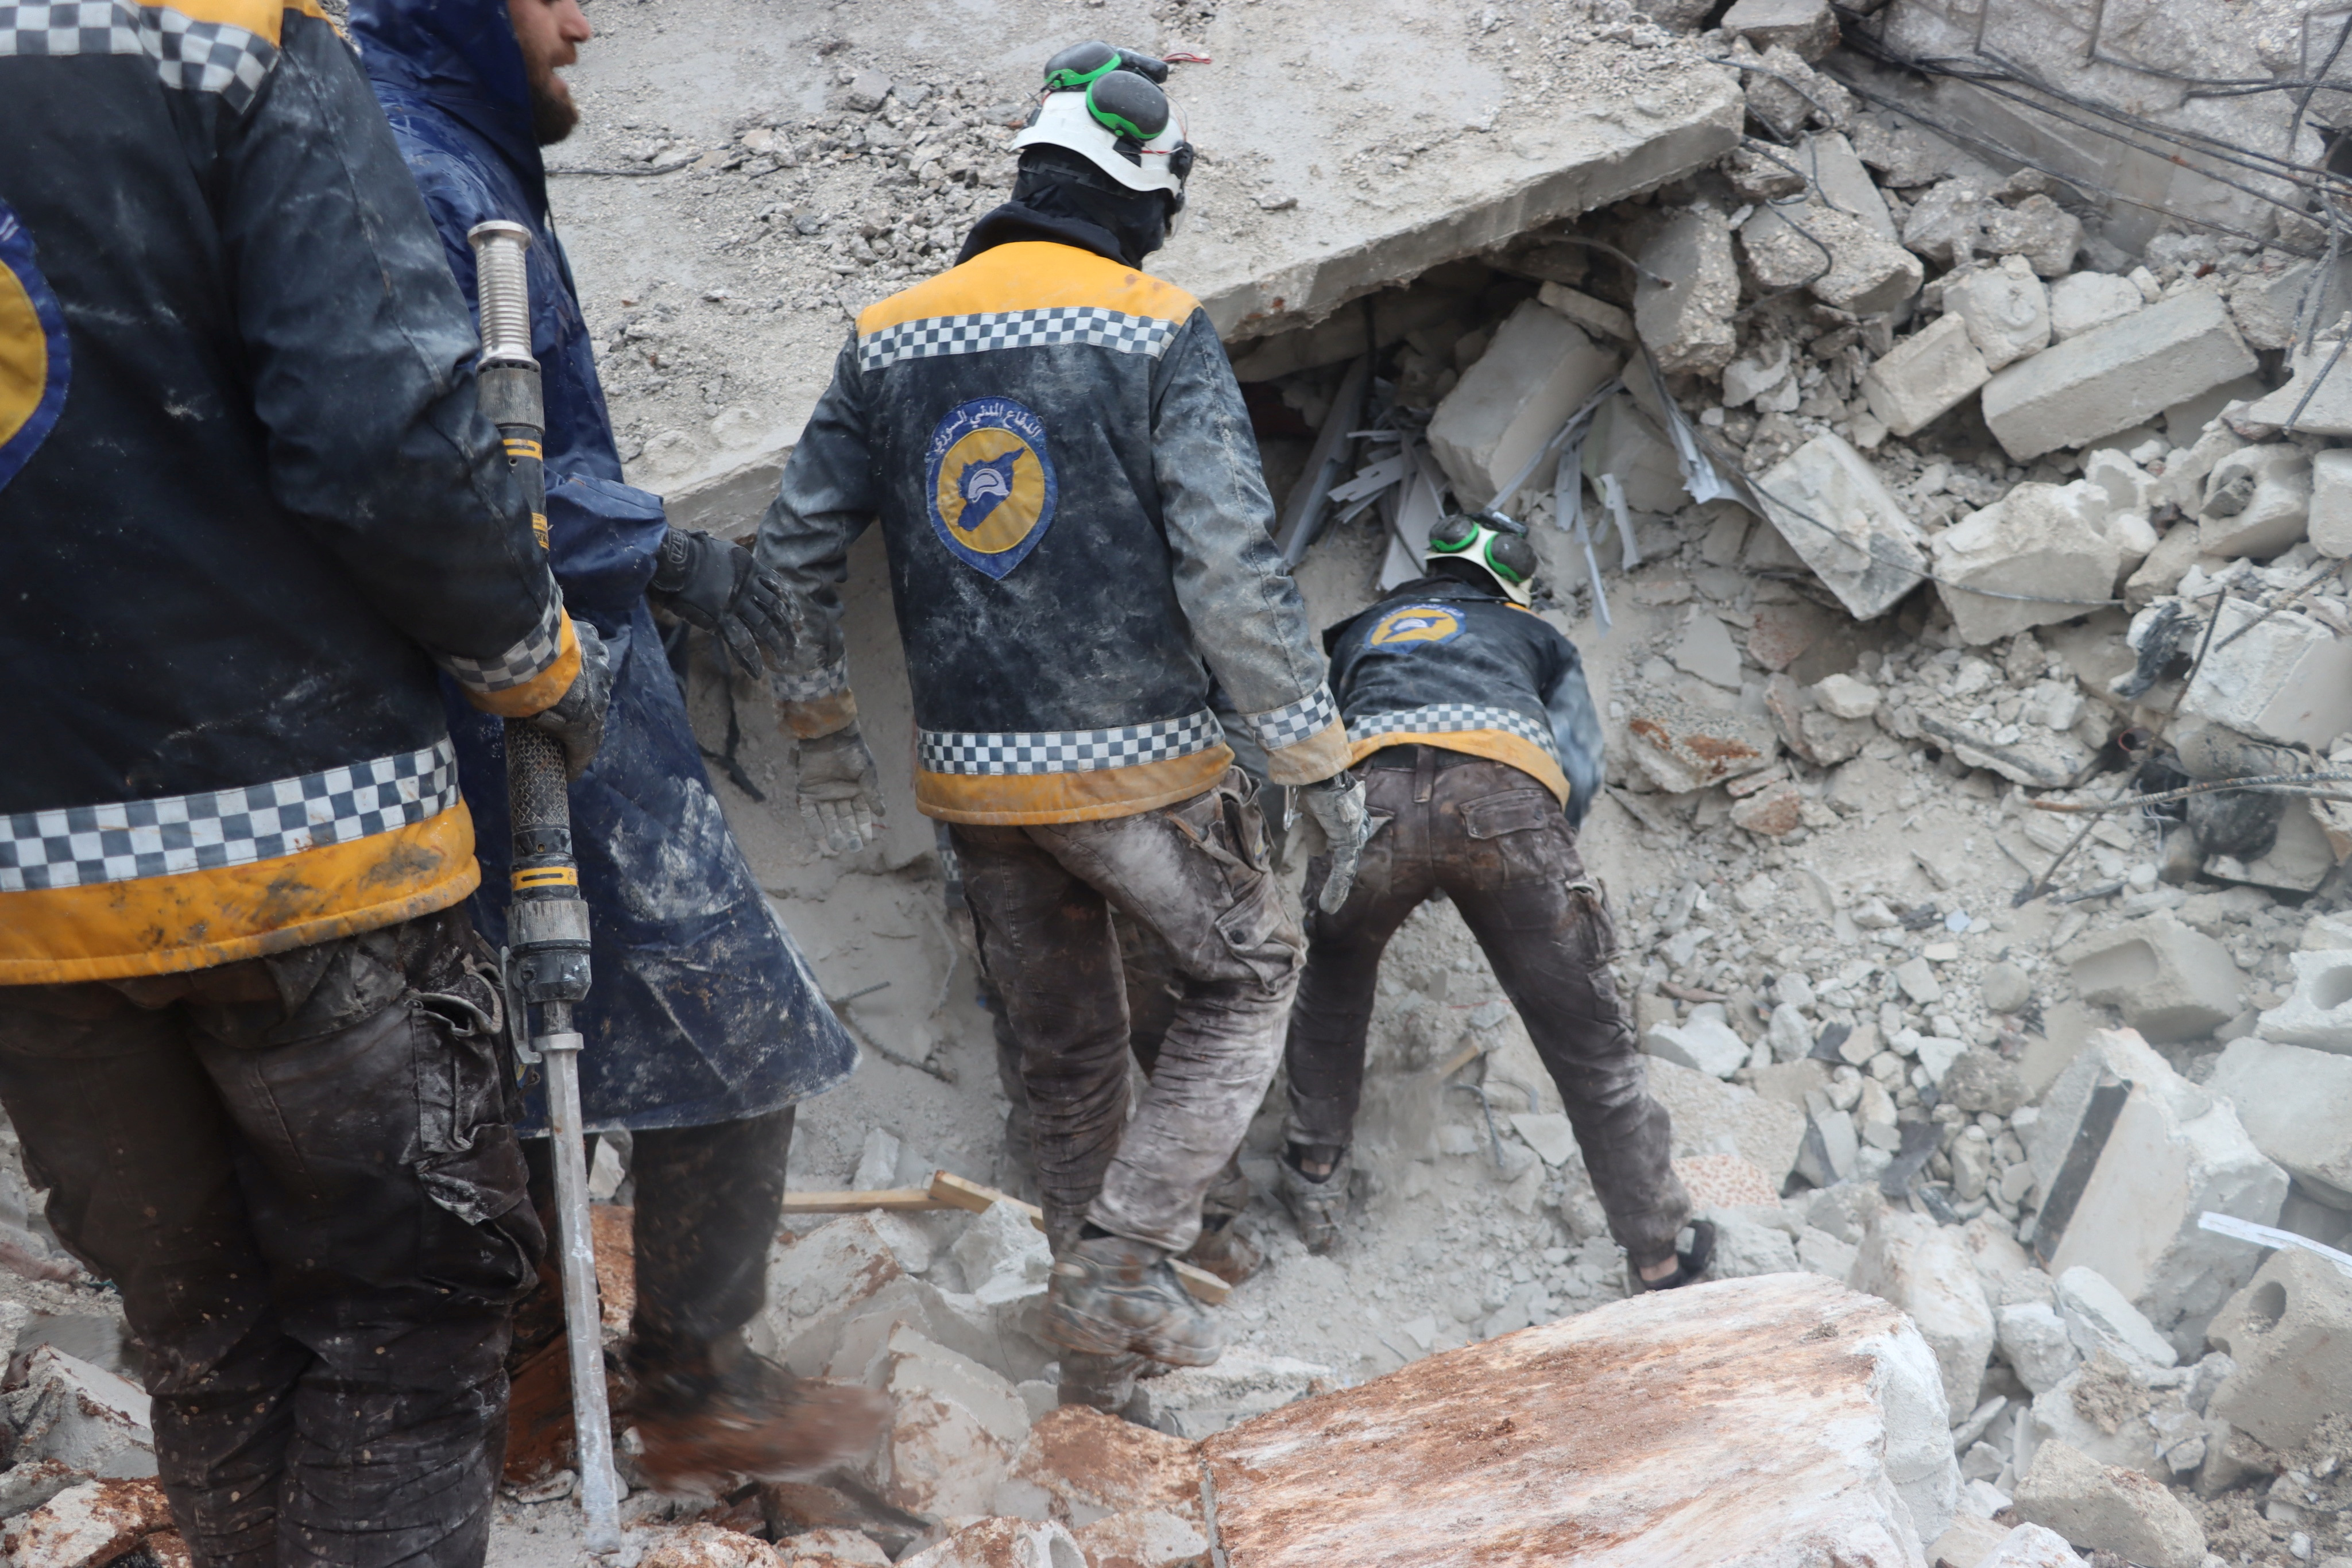 Los rescatistas buscan sobrevivientes bajo los escombros, luego de un terremoto, en Al Atarib, Siria.
